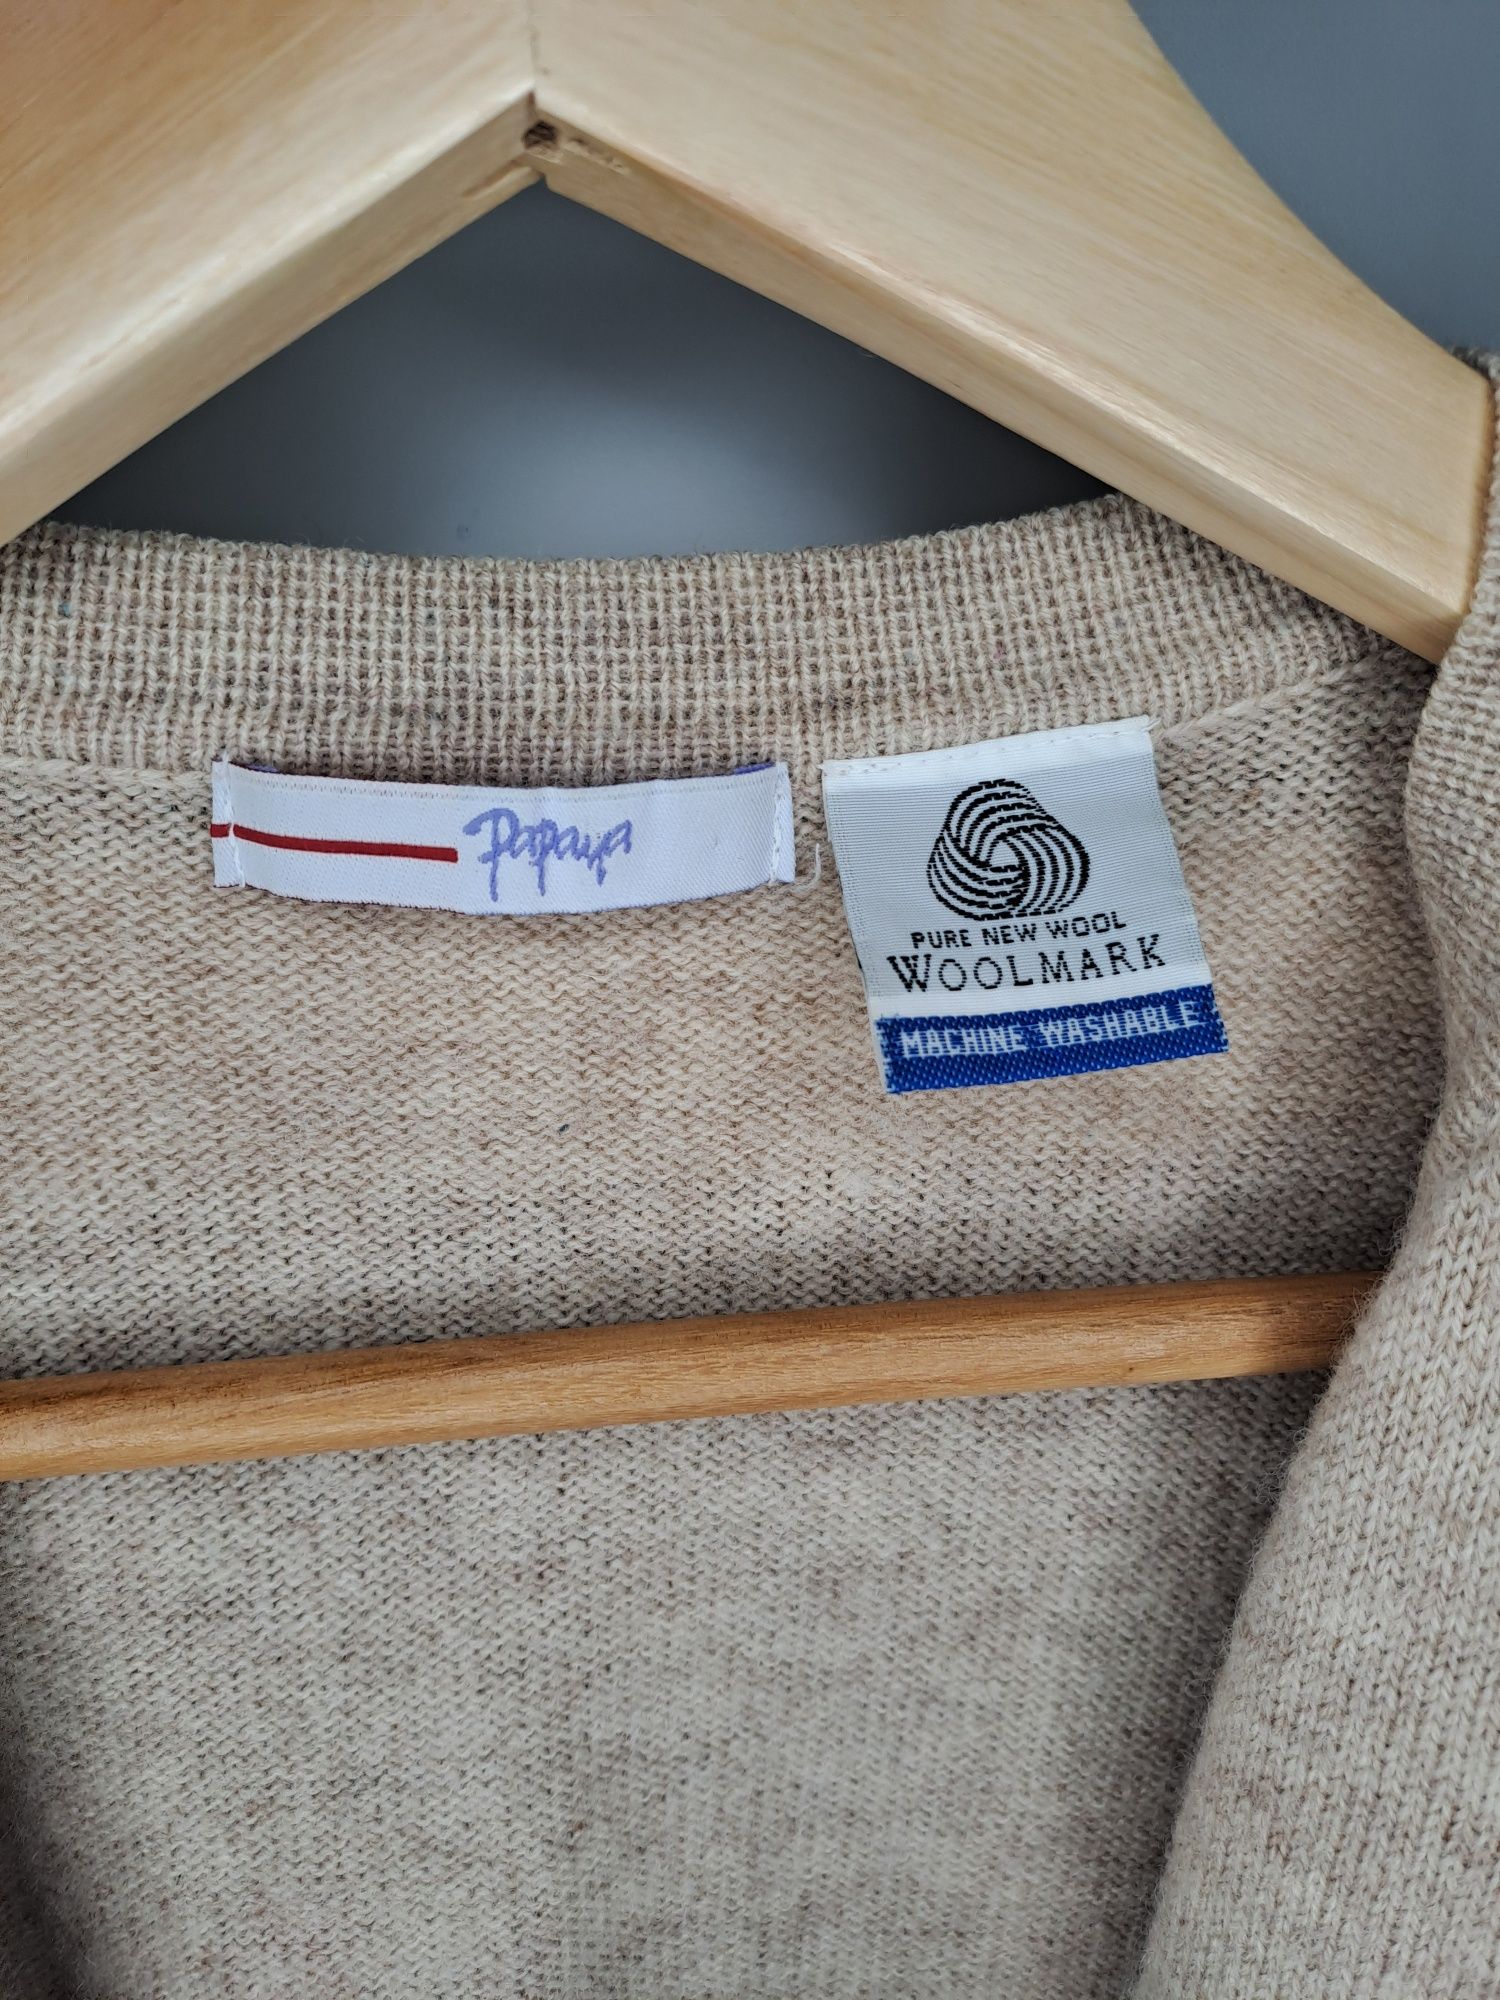 Beżowy sweter kardigan 100% wełny jagnięcej Papaya oversize XS, S, M